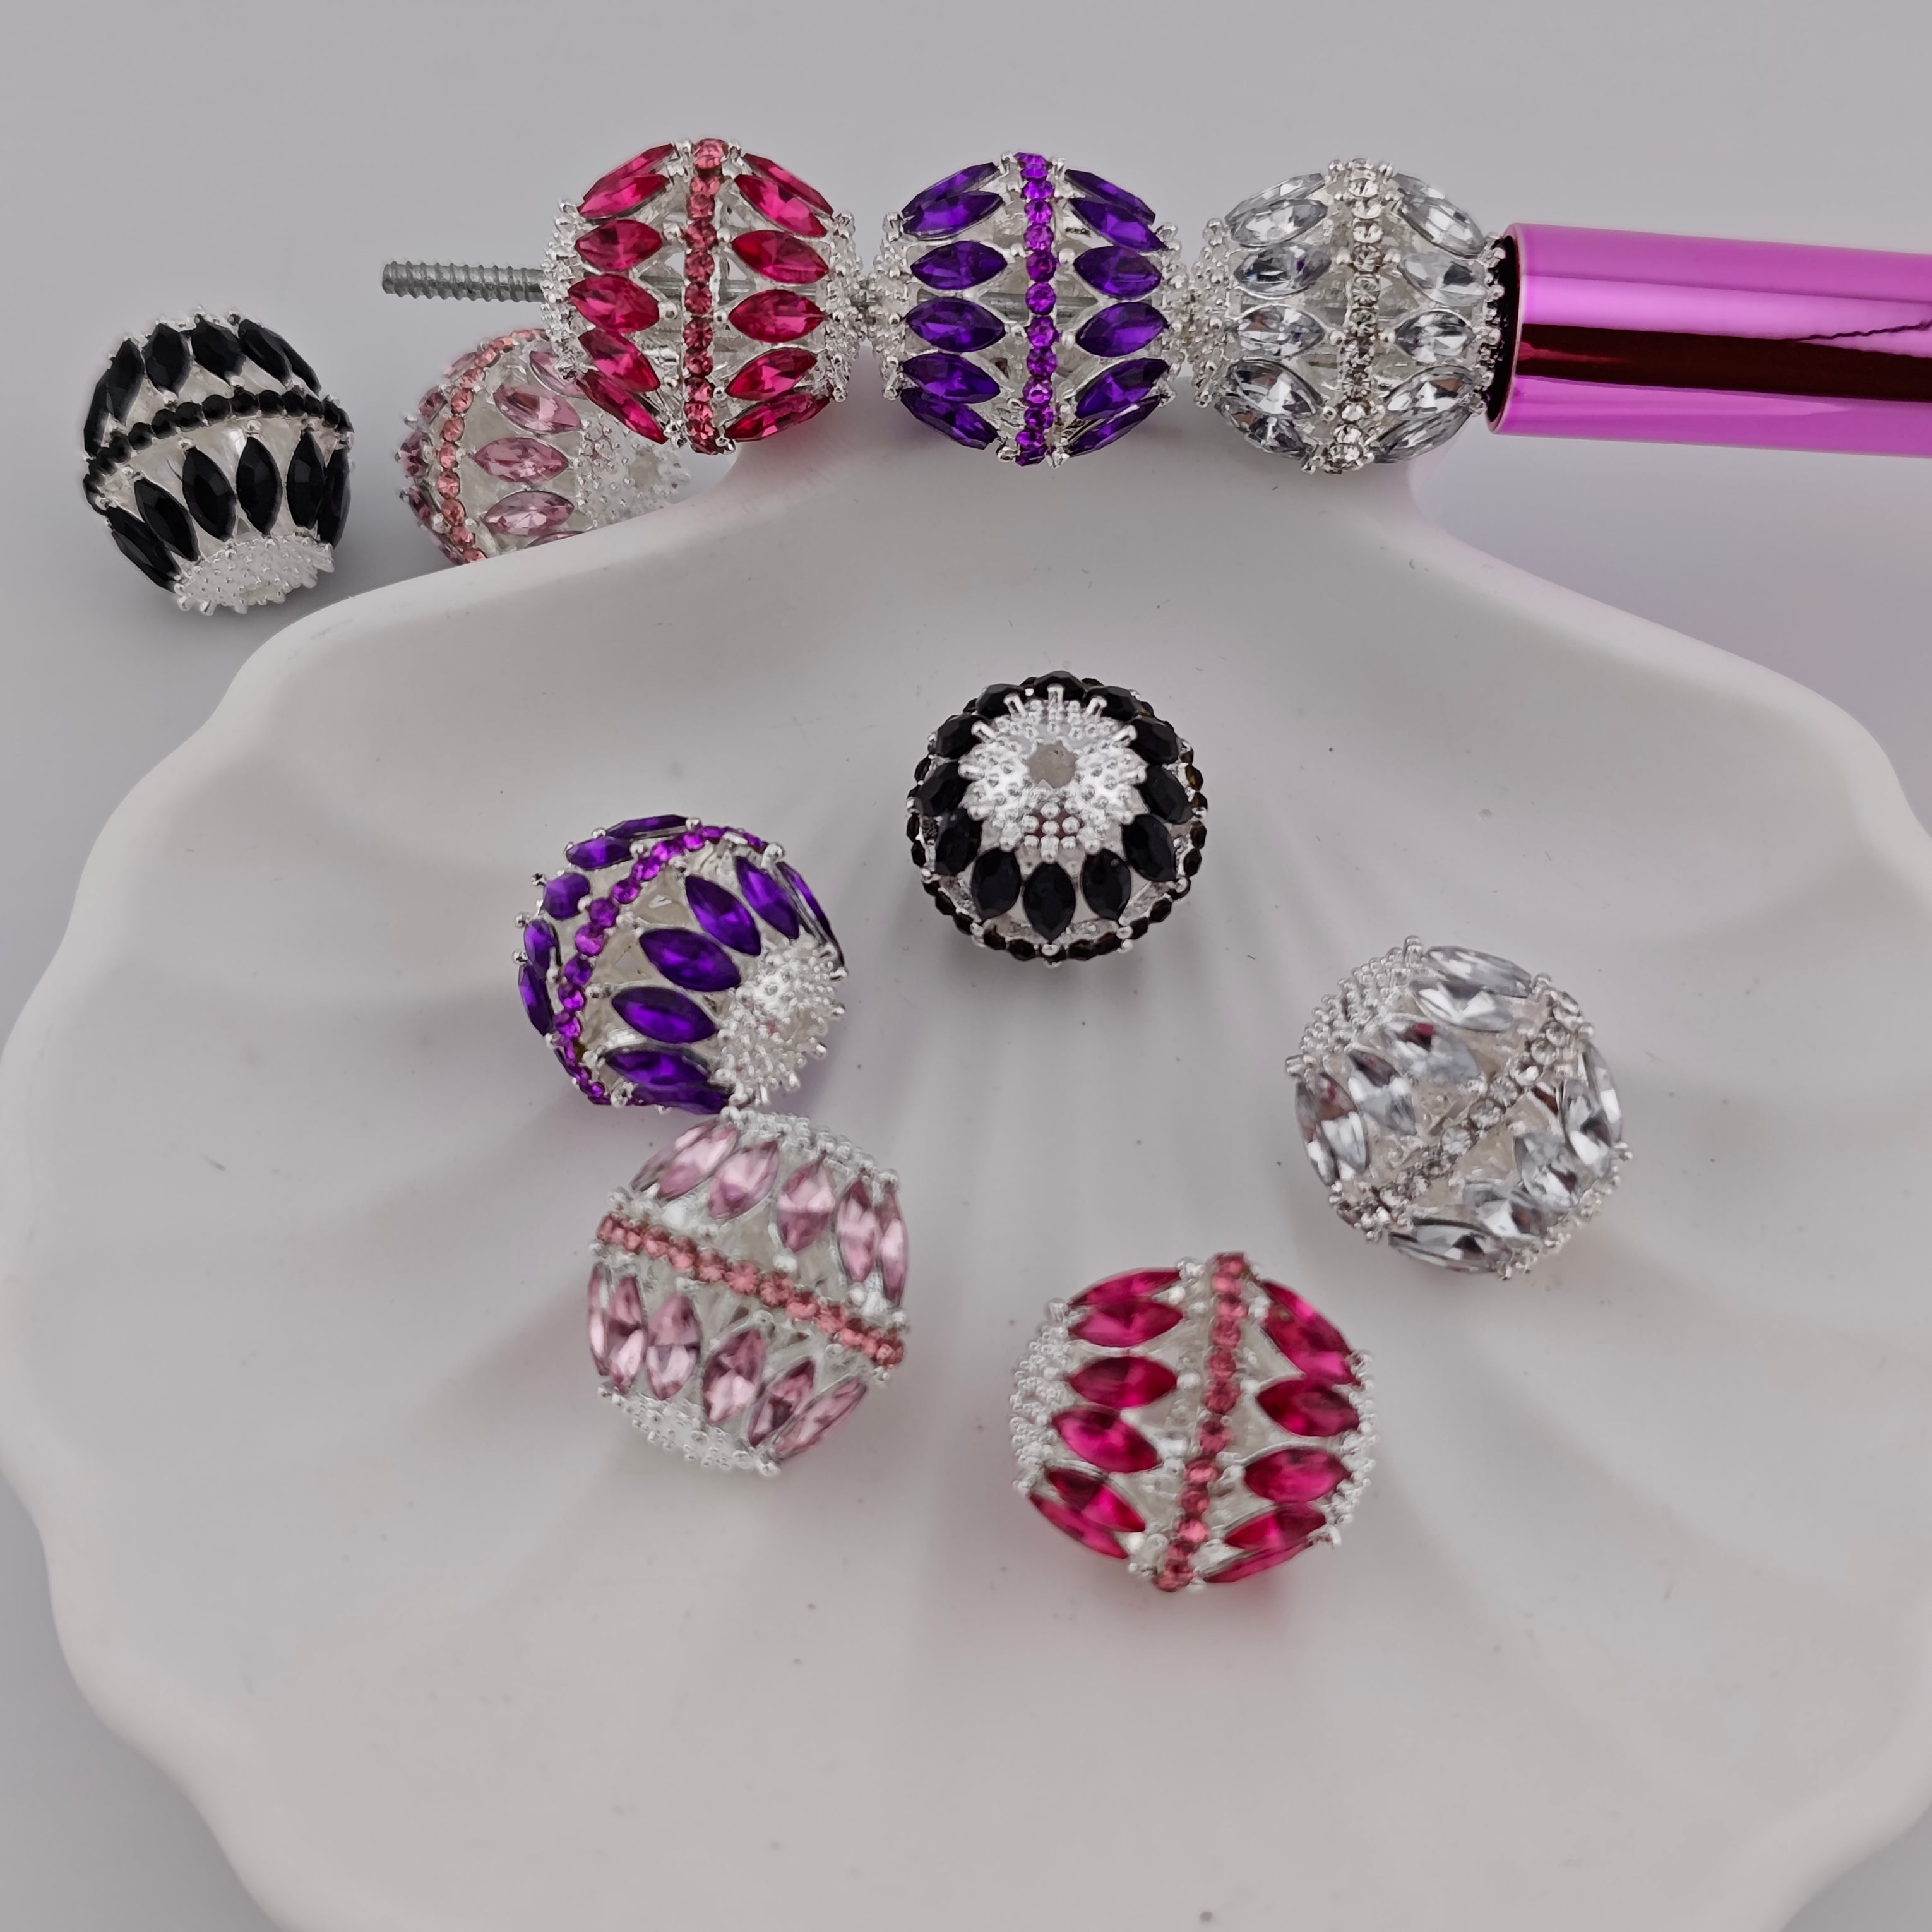 (K969) 5 Pieces Silver Metal Leaf Diamonds Sparkling Beads ( 5 Colors, 1 Piece each color)